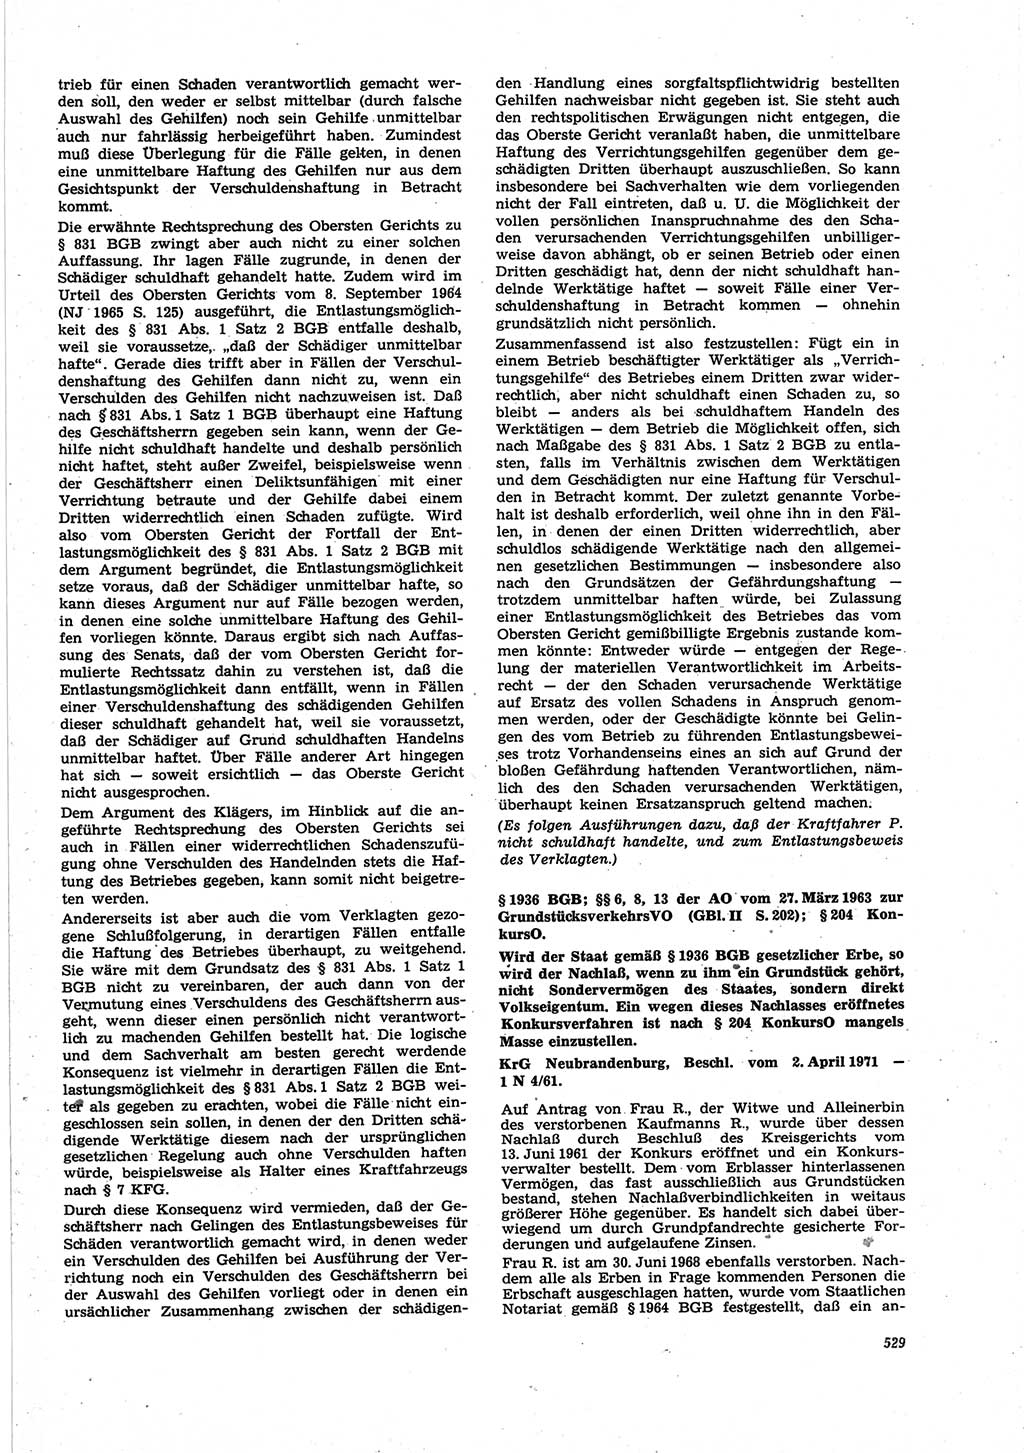 Neue Justiz (NJ), Zeitschrift für Recht und Rechtswissenschaft [Deutsche Demokratische Republik (DDR)], 25. Jahrgang 1971, Seite 529 (NJ DDR 1971, S. 529)